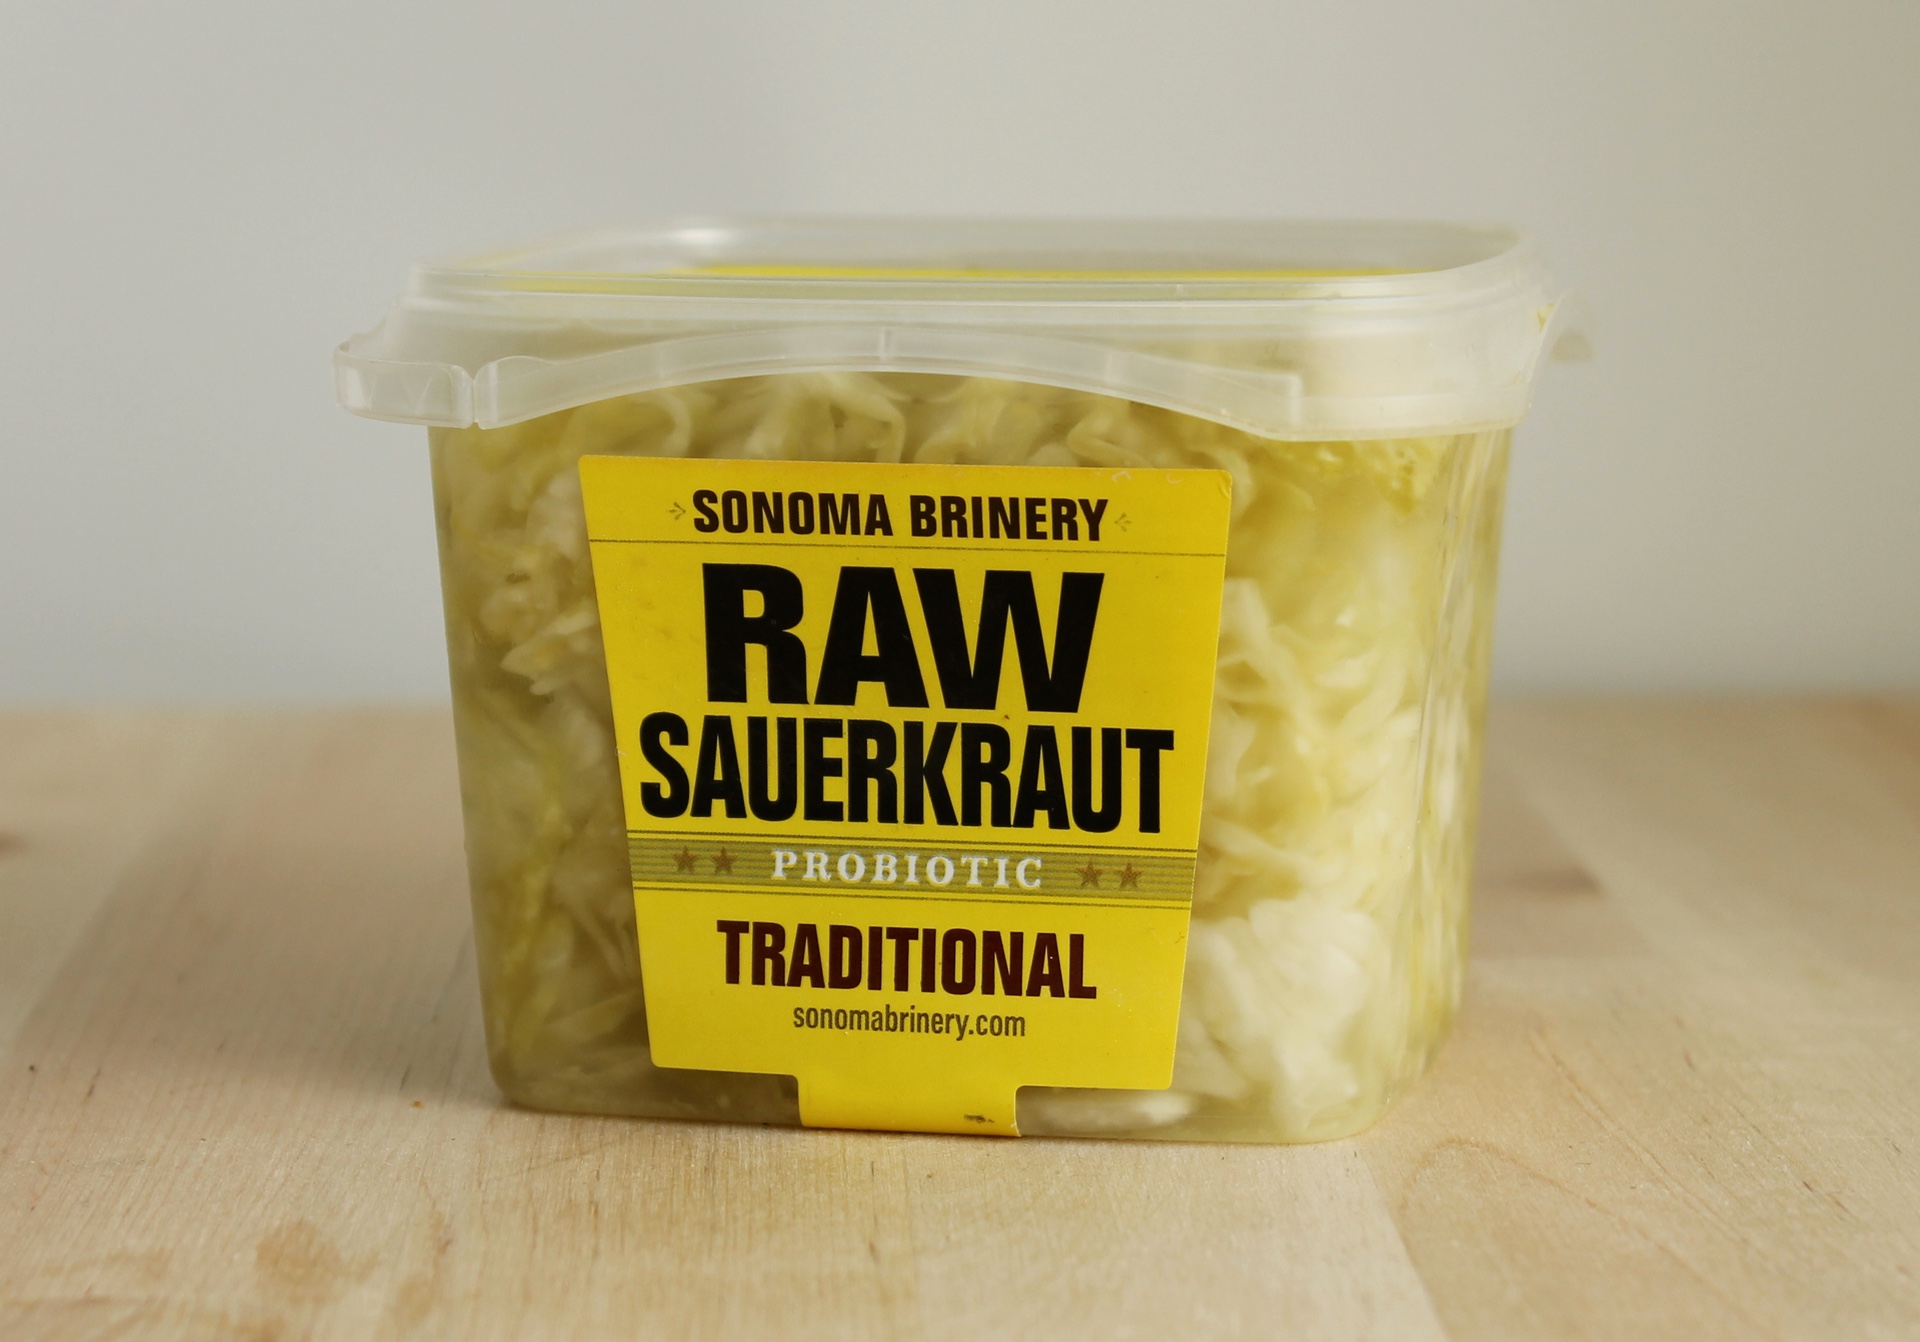 Sonoma Brinery sauerkraut.